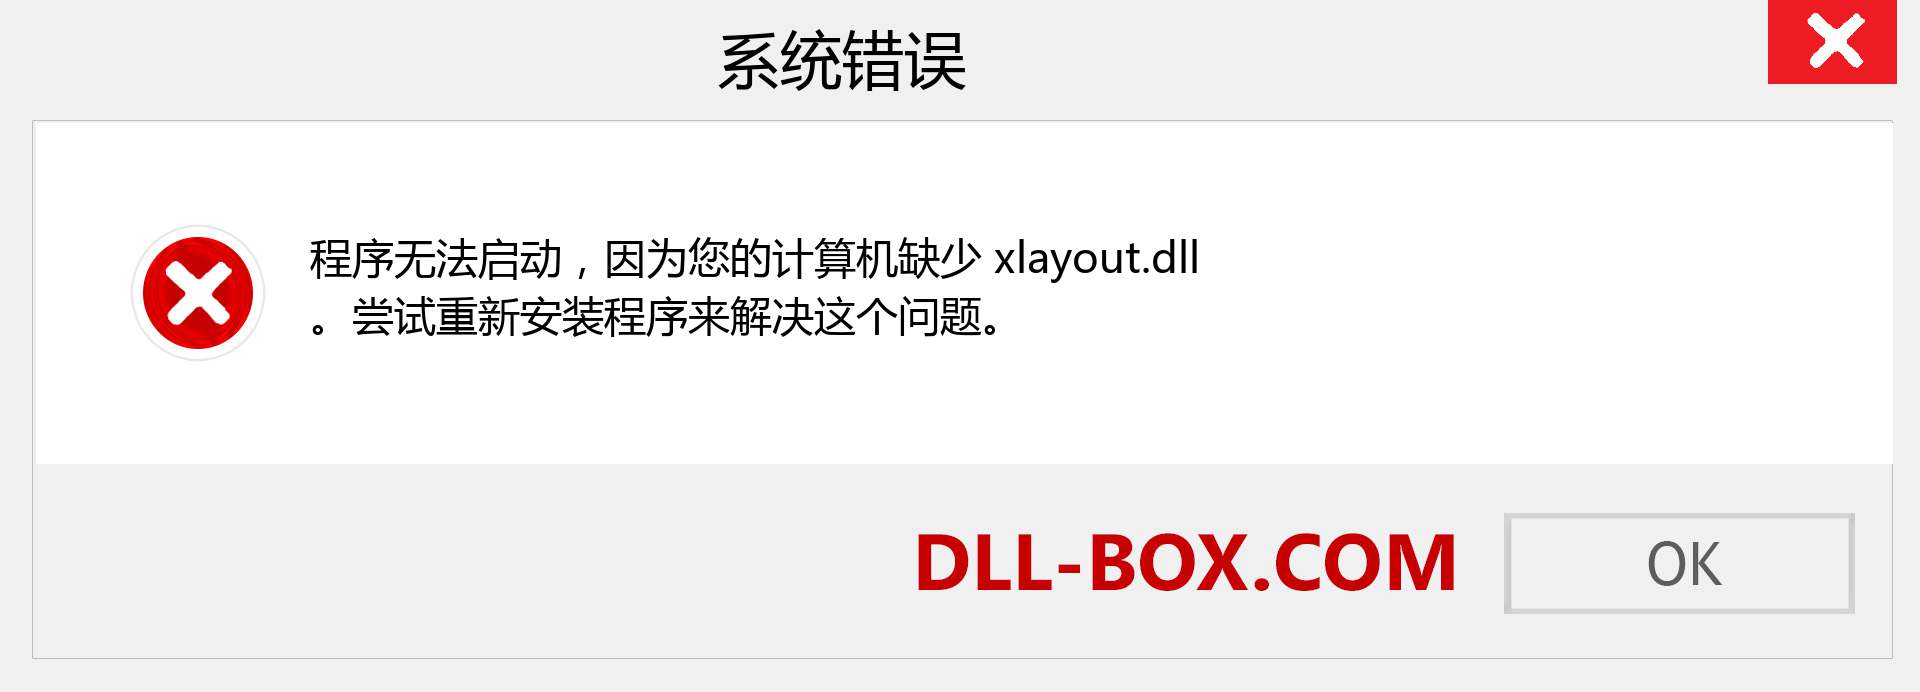 xlayout.dll 文件丢失？。 适用于 Windows 7、8、10 的下载 - 修复 Windows、照片、图像上的 xlayout dll 丢失错误